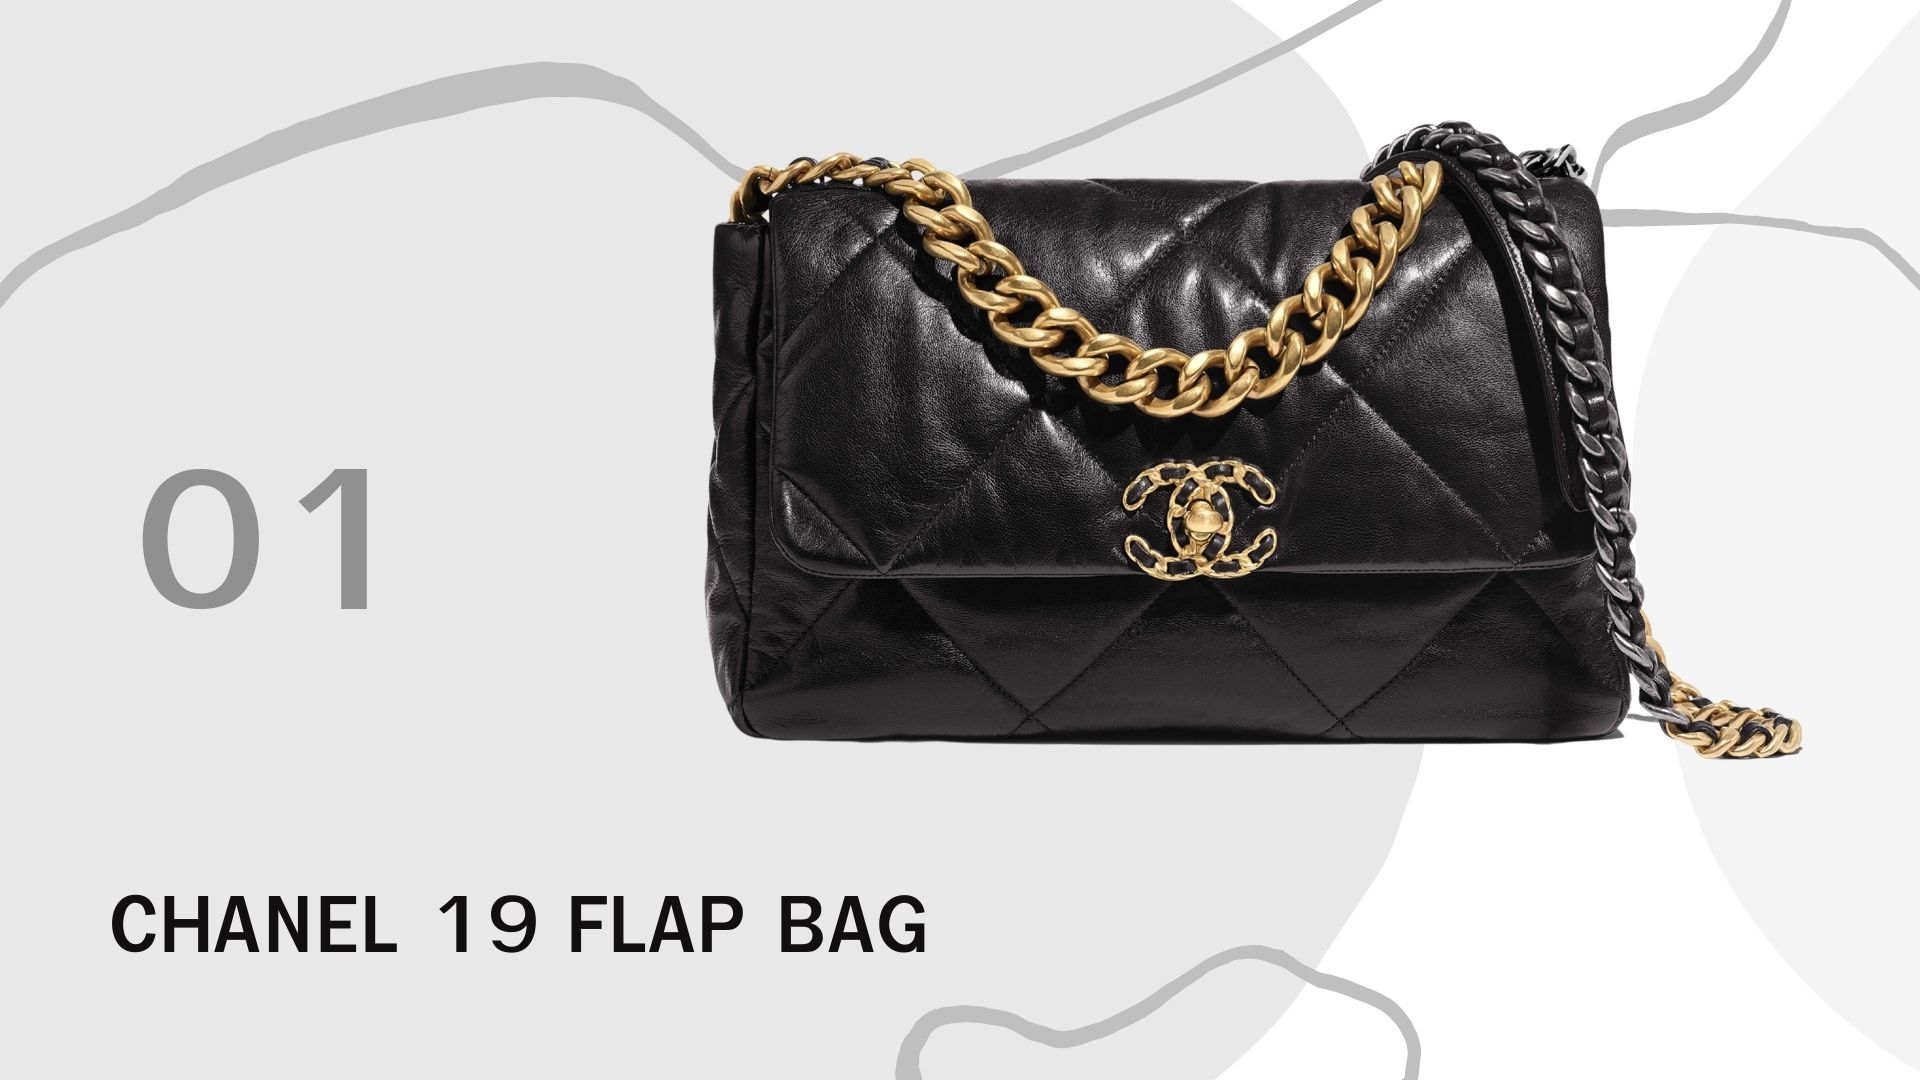 รวม 10 กระเป๋า ที่มาแรงทั้งหมดในปี 2020 นี้ Chanel 19 Flap Bag